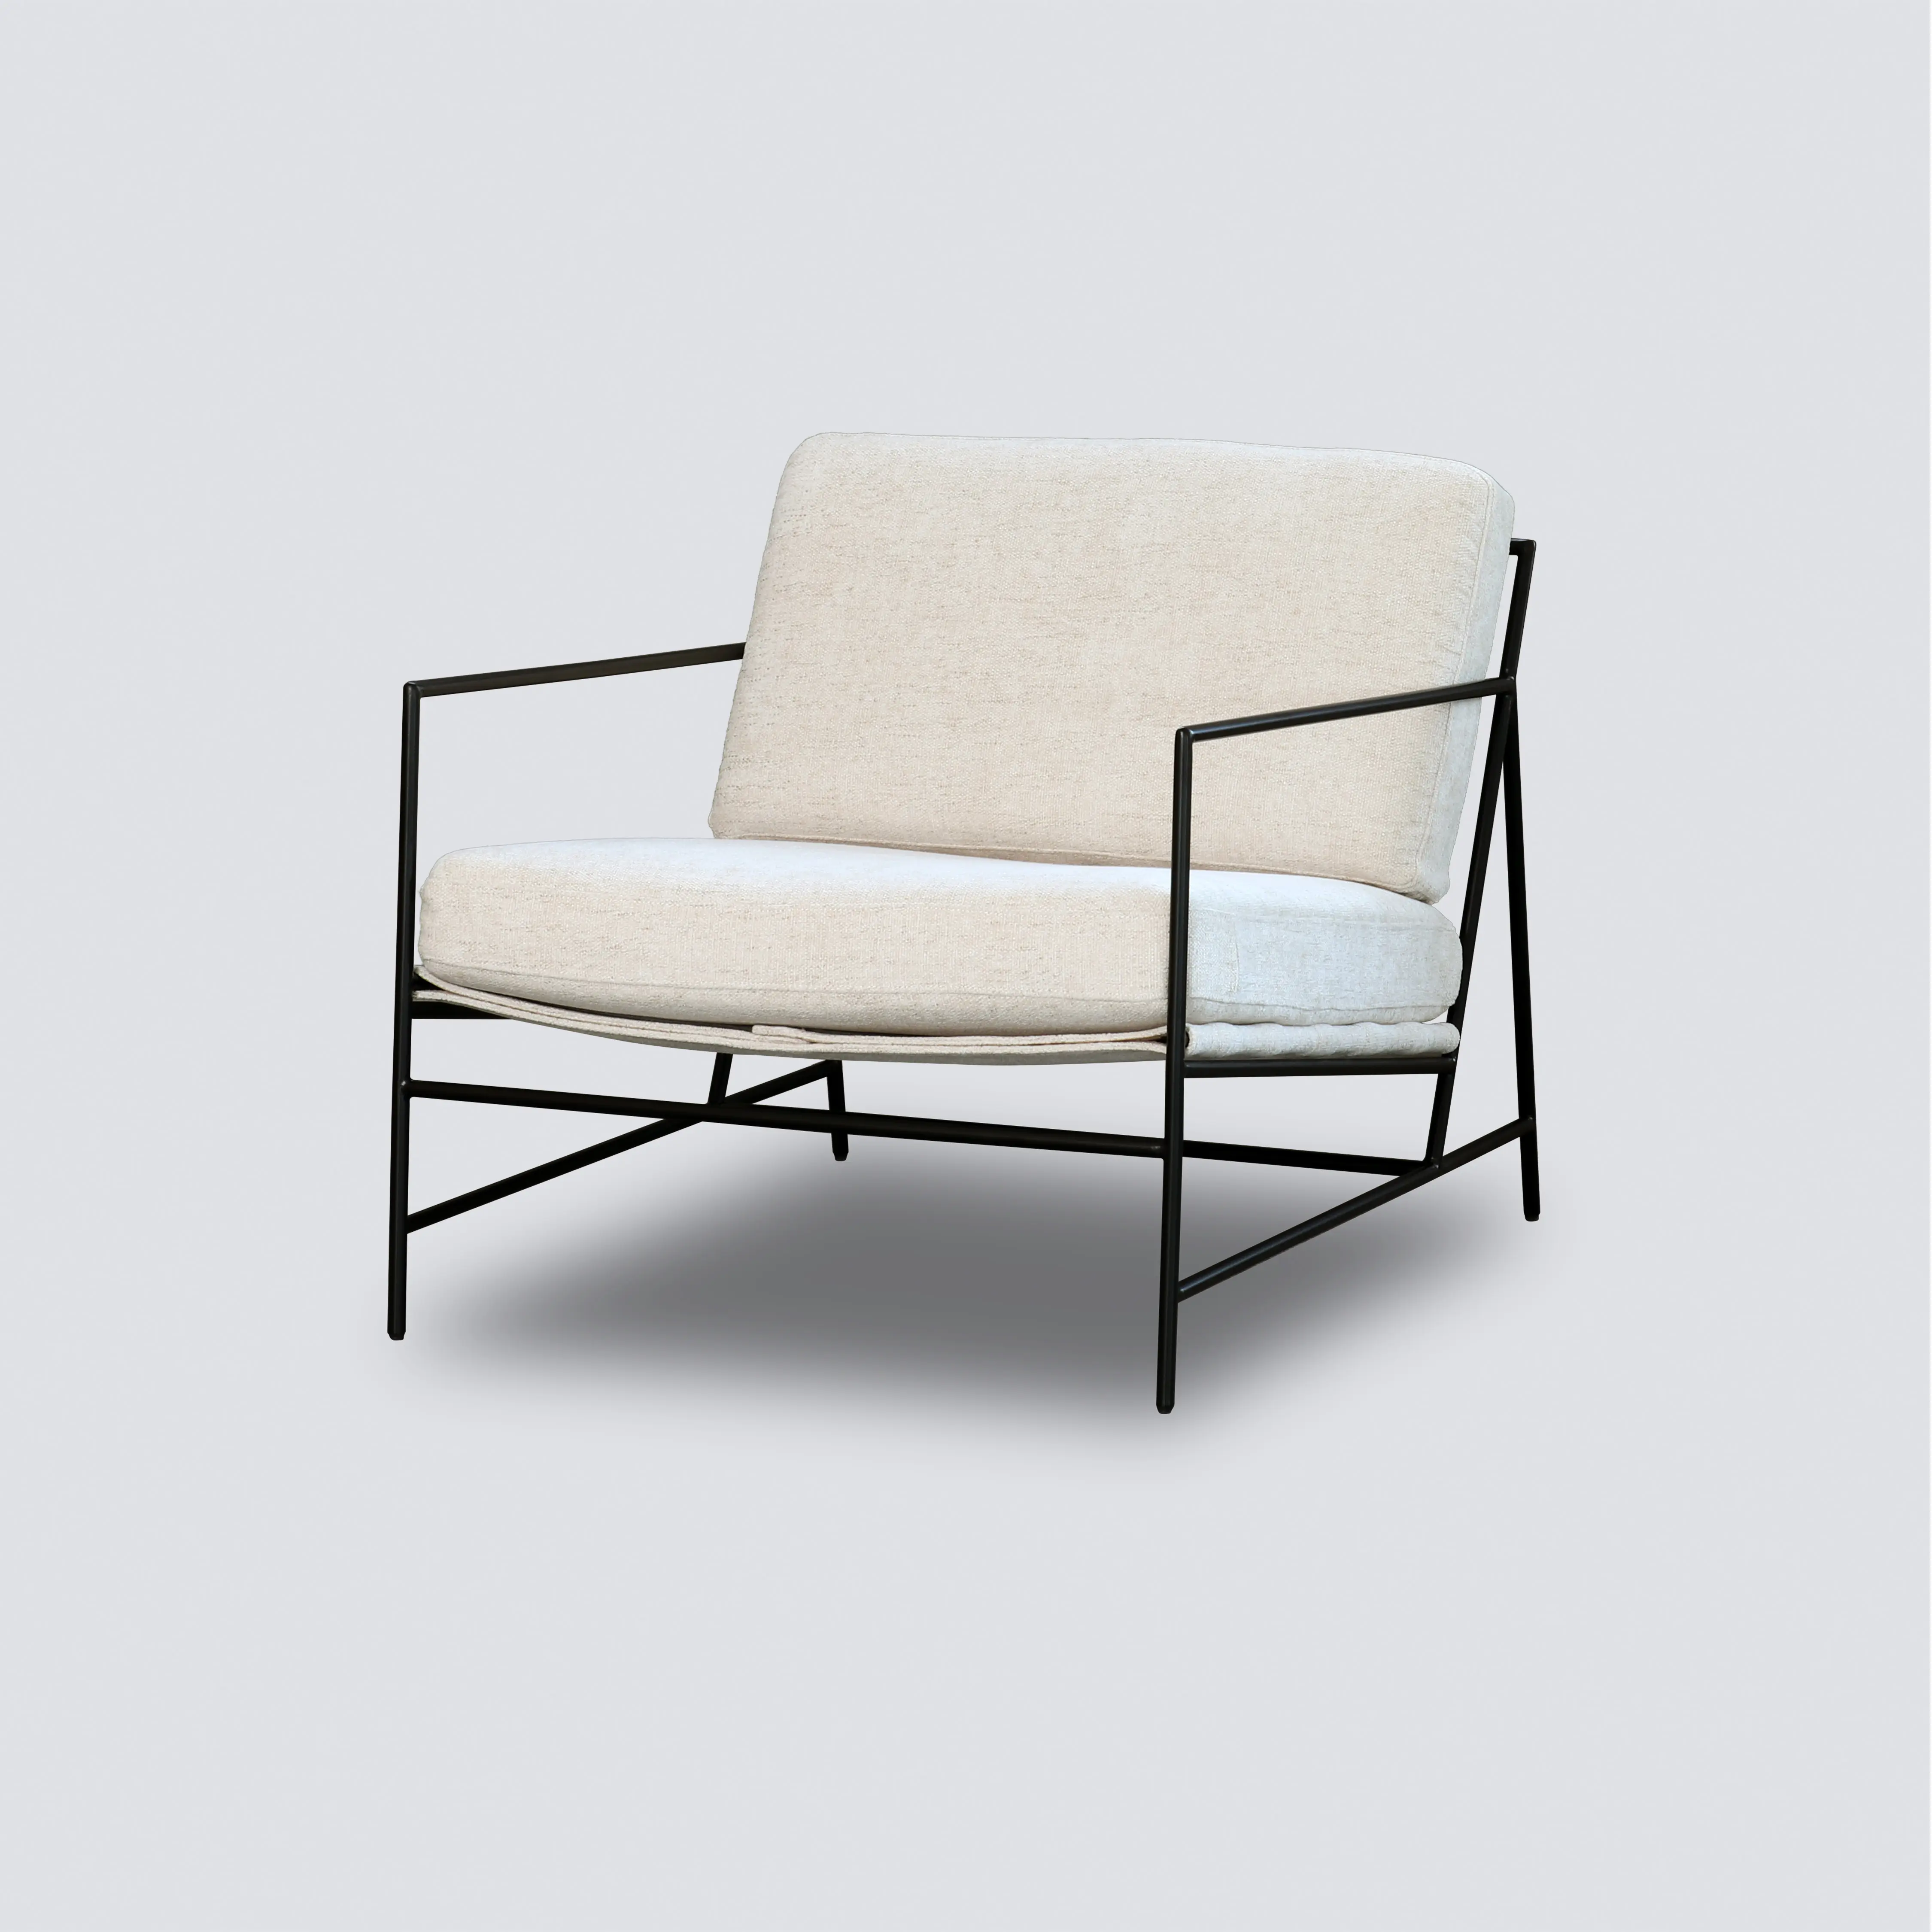 Arredamento NS design moderno occasionale struttura in metallo gambe in ferro arte divano set club sedia da salotto poltrona